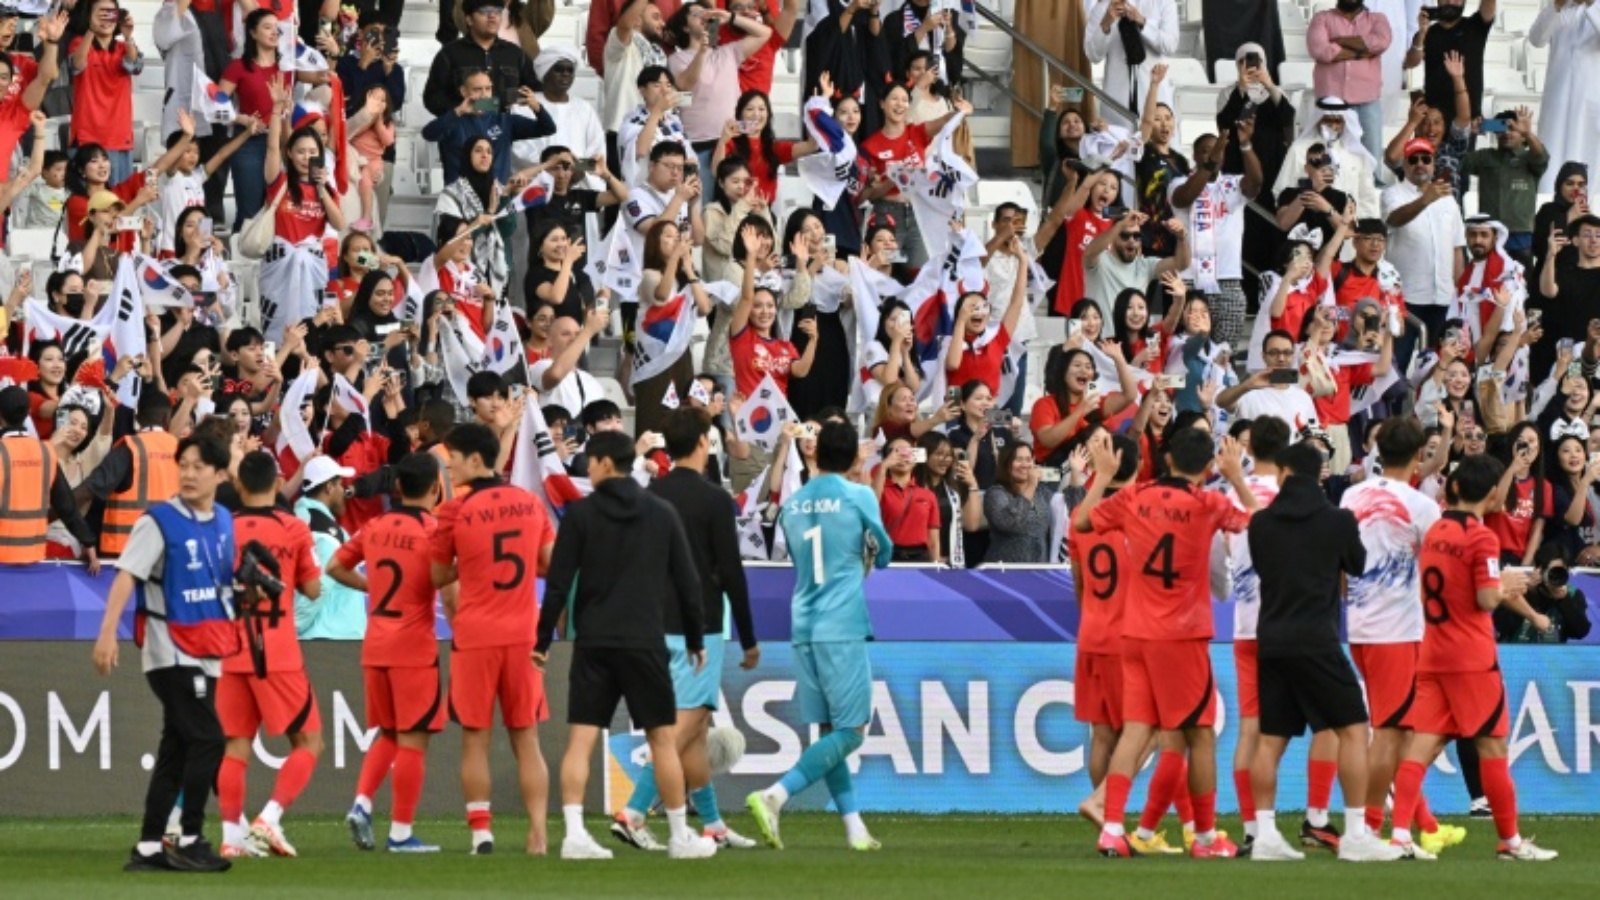 حققت كوريا الجنوبية فوزاً افتتاحياً على البحرين 3-1 في كأس آسيا لكرة القدم في الدوحة